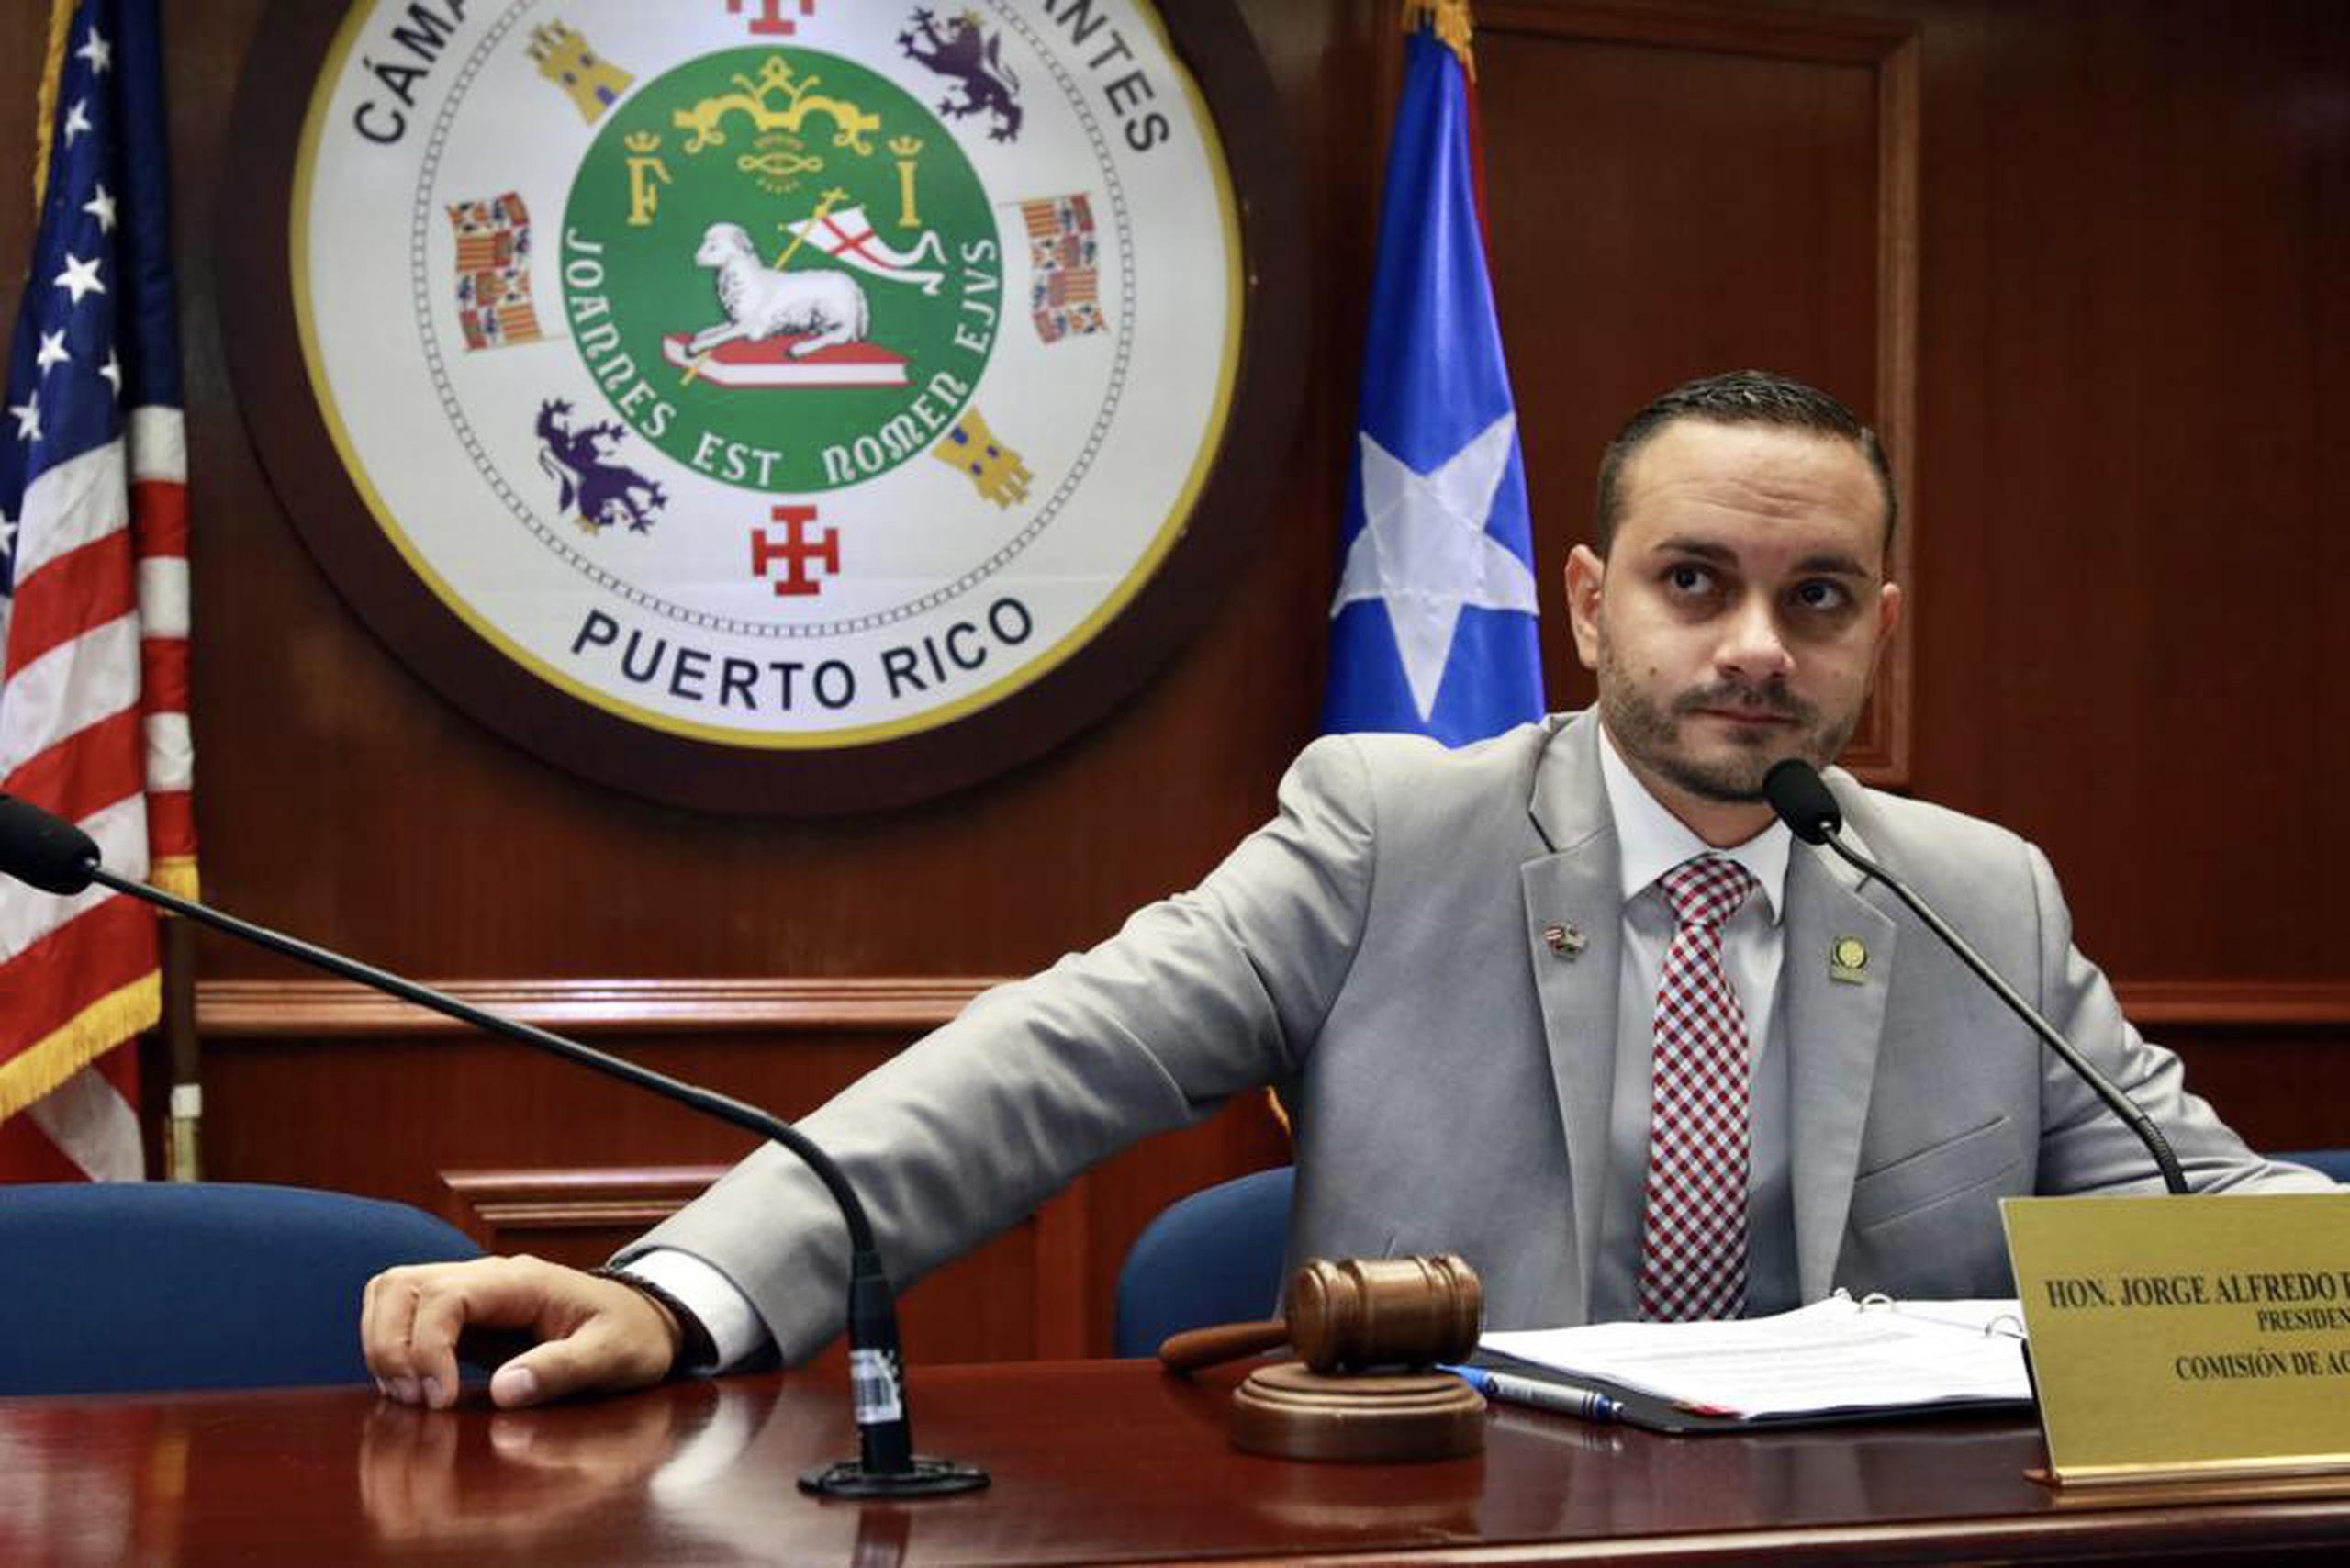 Representante Jorge Alfredo Rivera Segarra, presidente de la Comisión de Agricultura de la Cámara de Representantes,